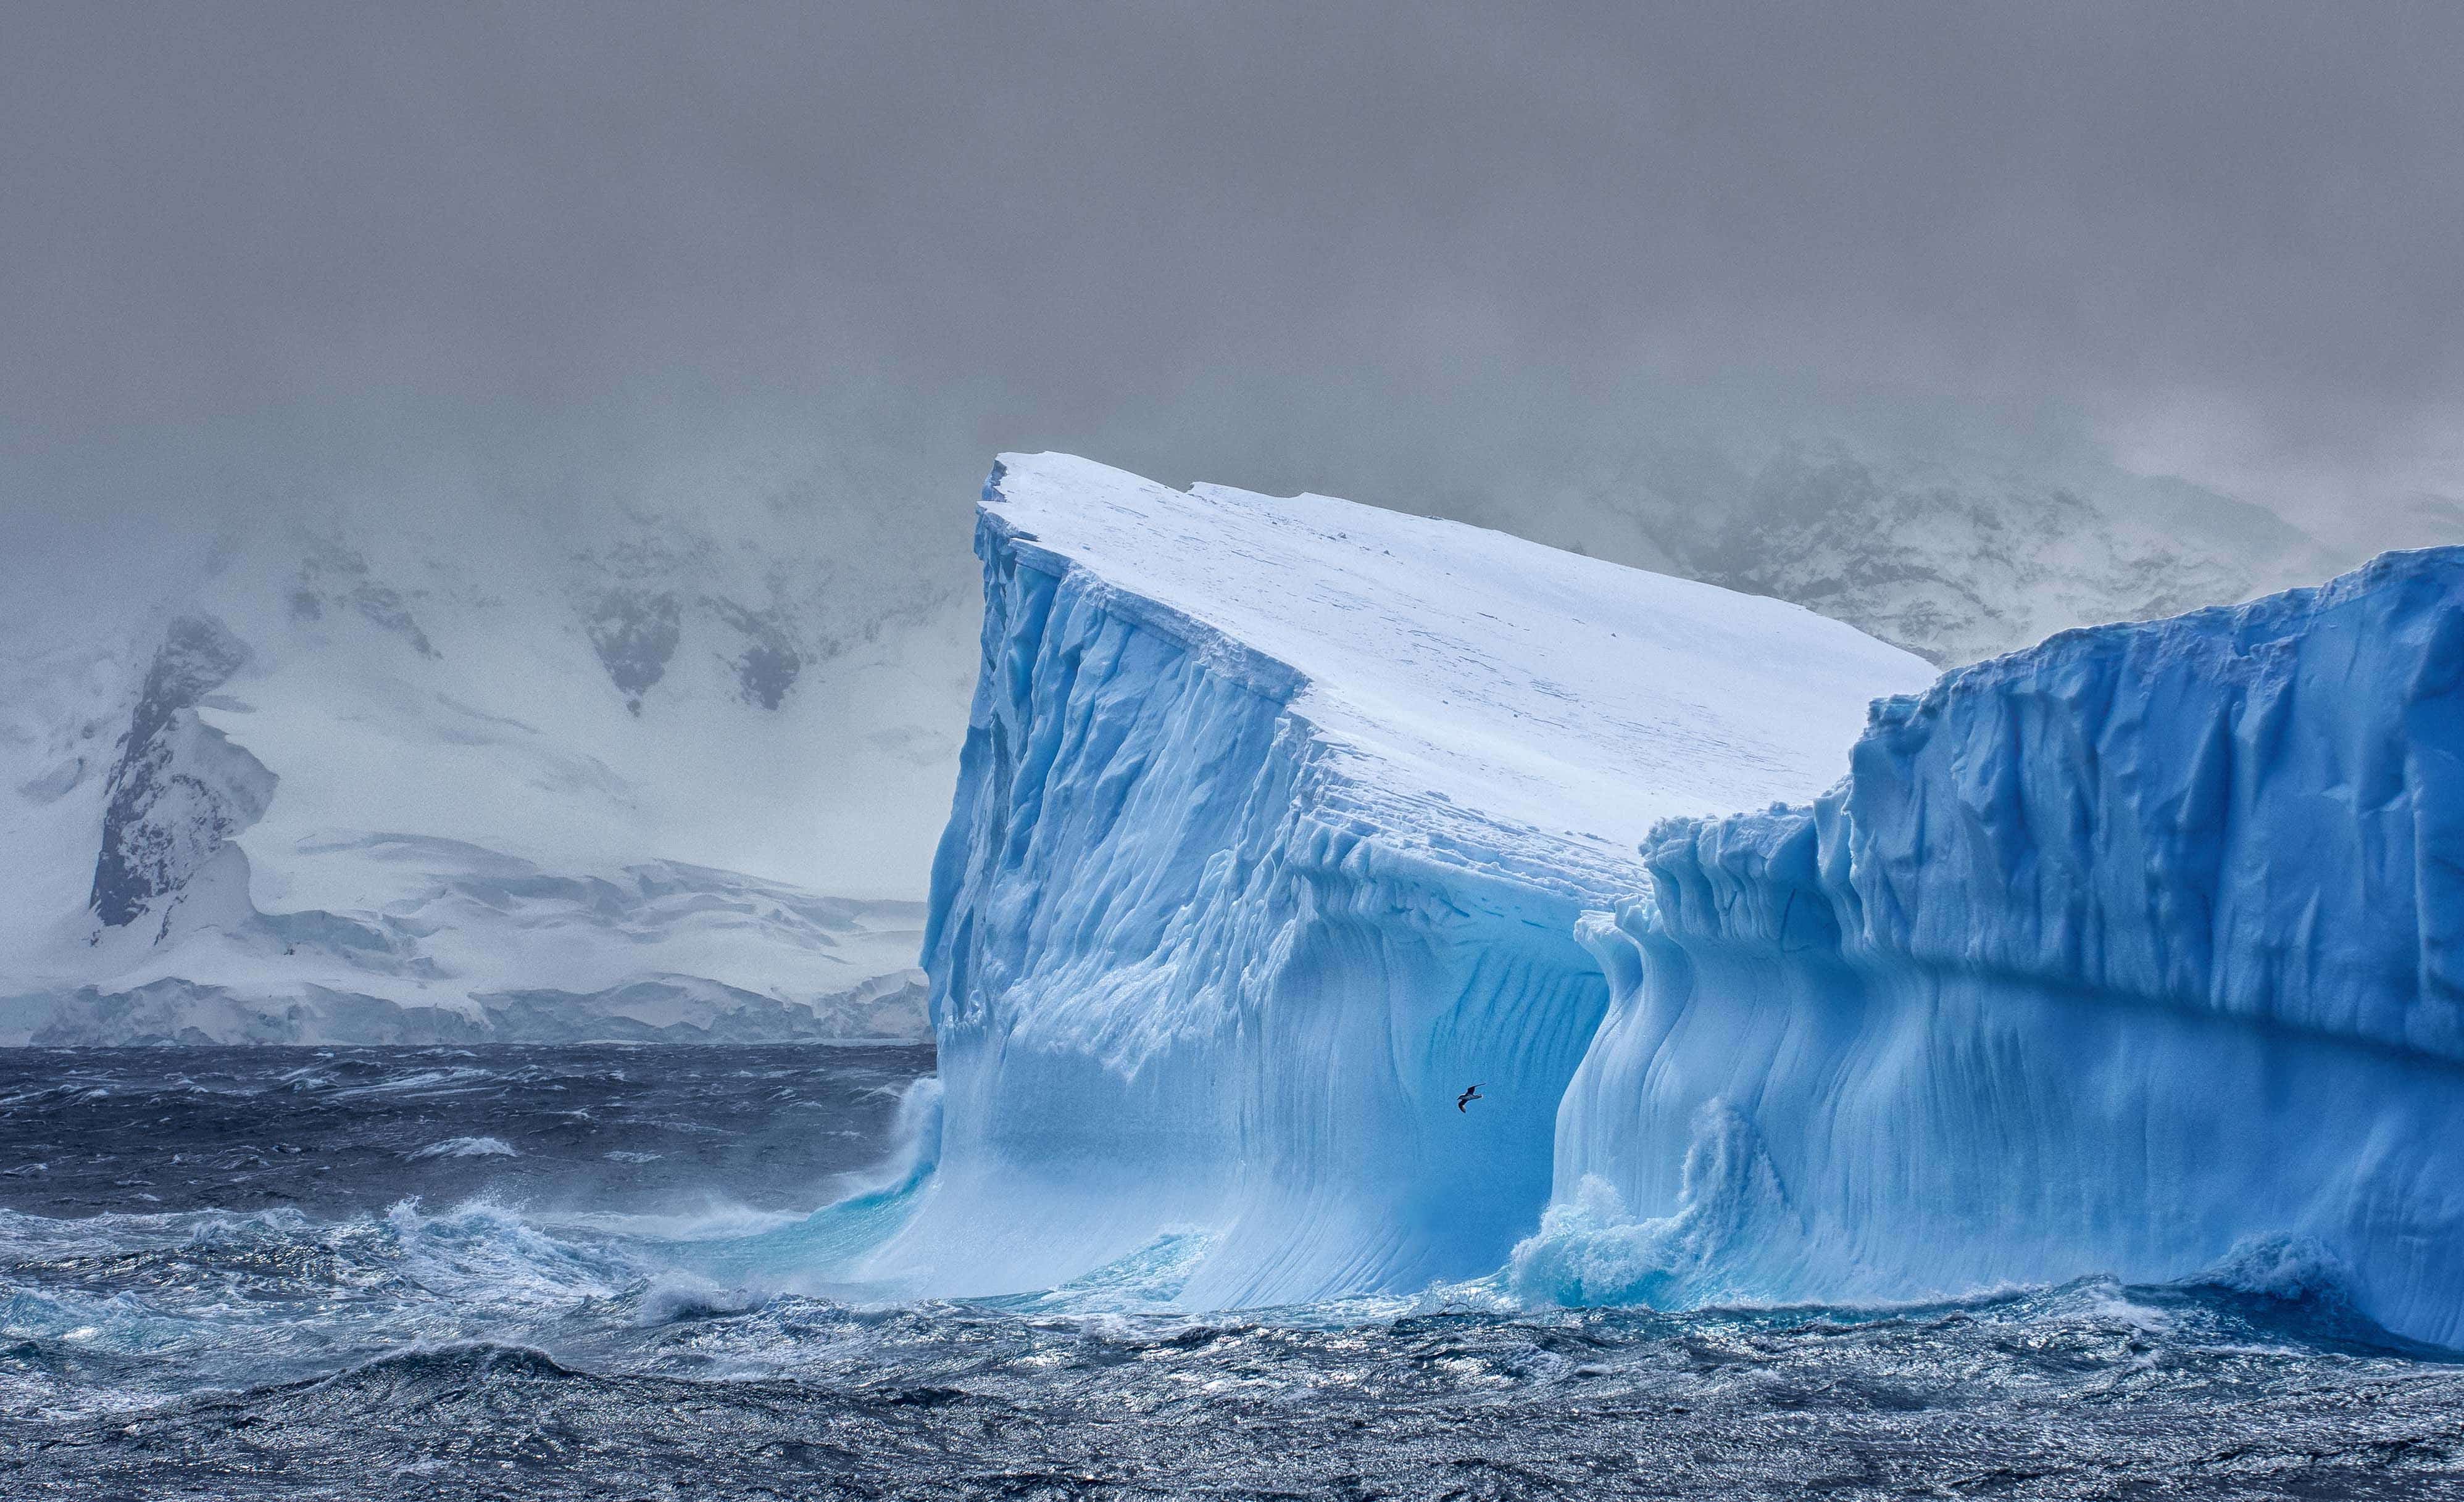 Et stort blåt isbjerg i havet, men et bjerg i baggrunden